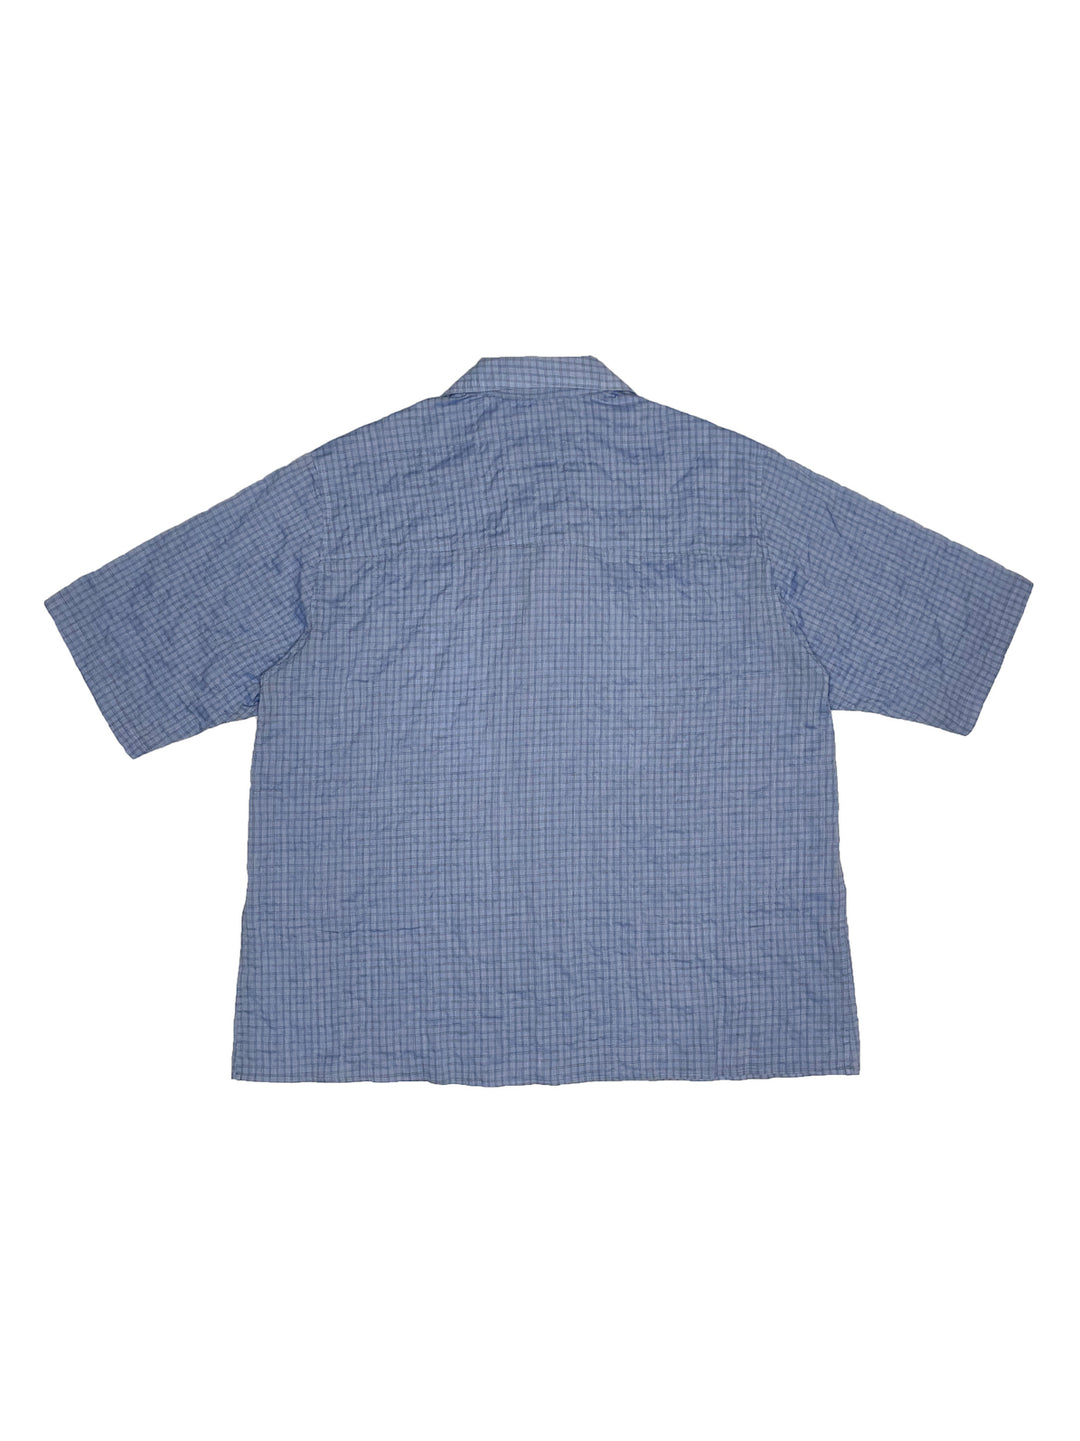 Open Soutien Collar Shirt BLUE